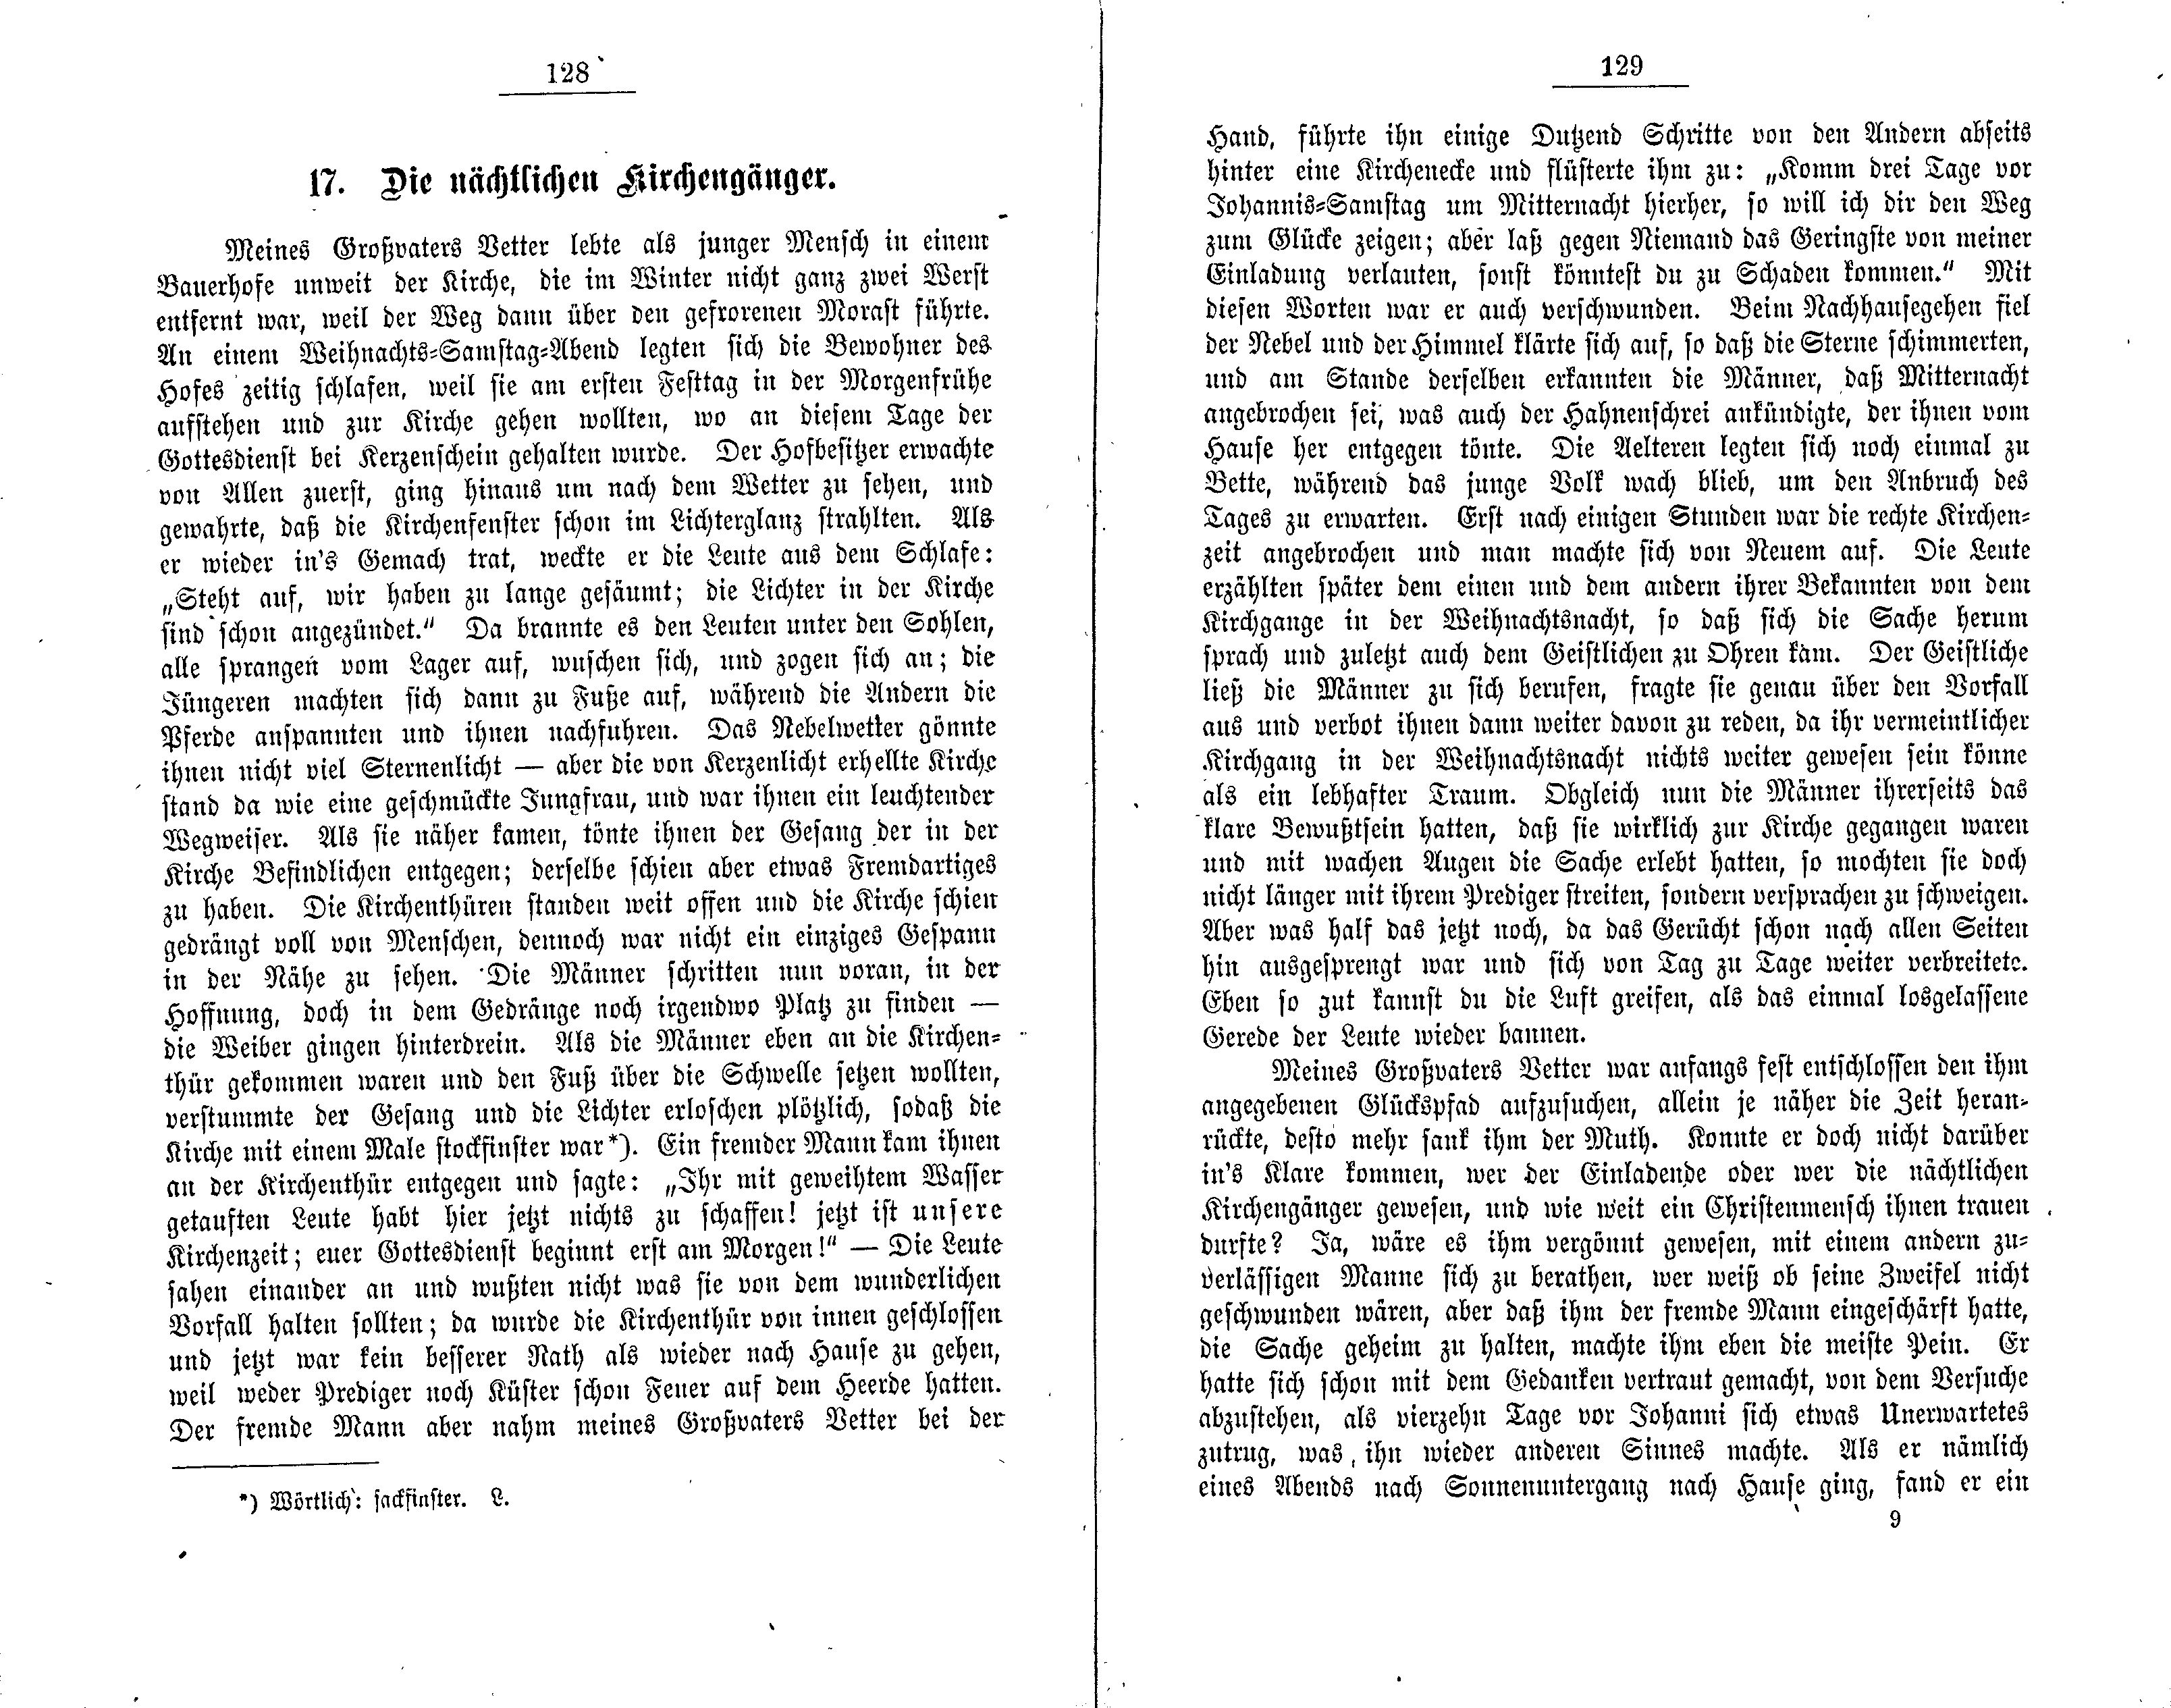 Die nächtlichen Kirchengänger (1881) | 1. (128-129) Main body of text